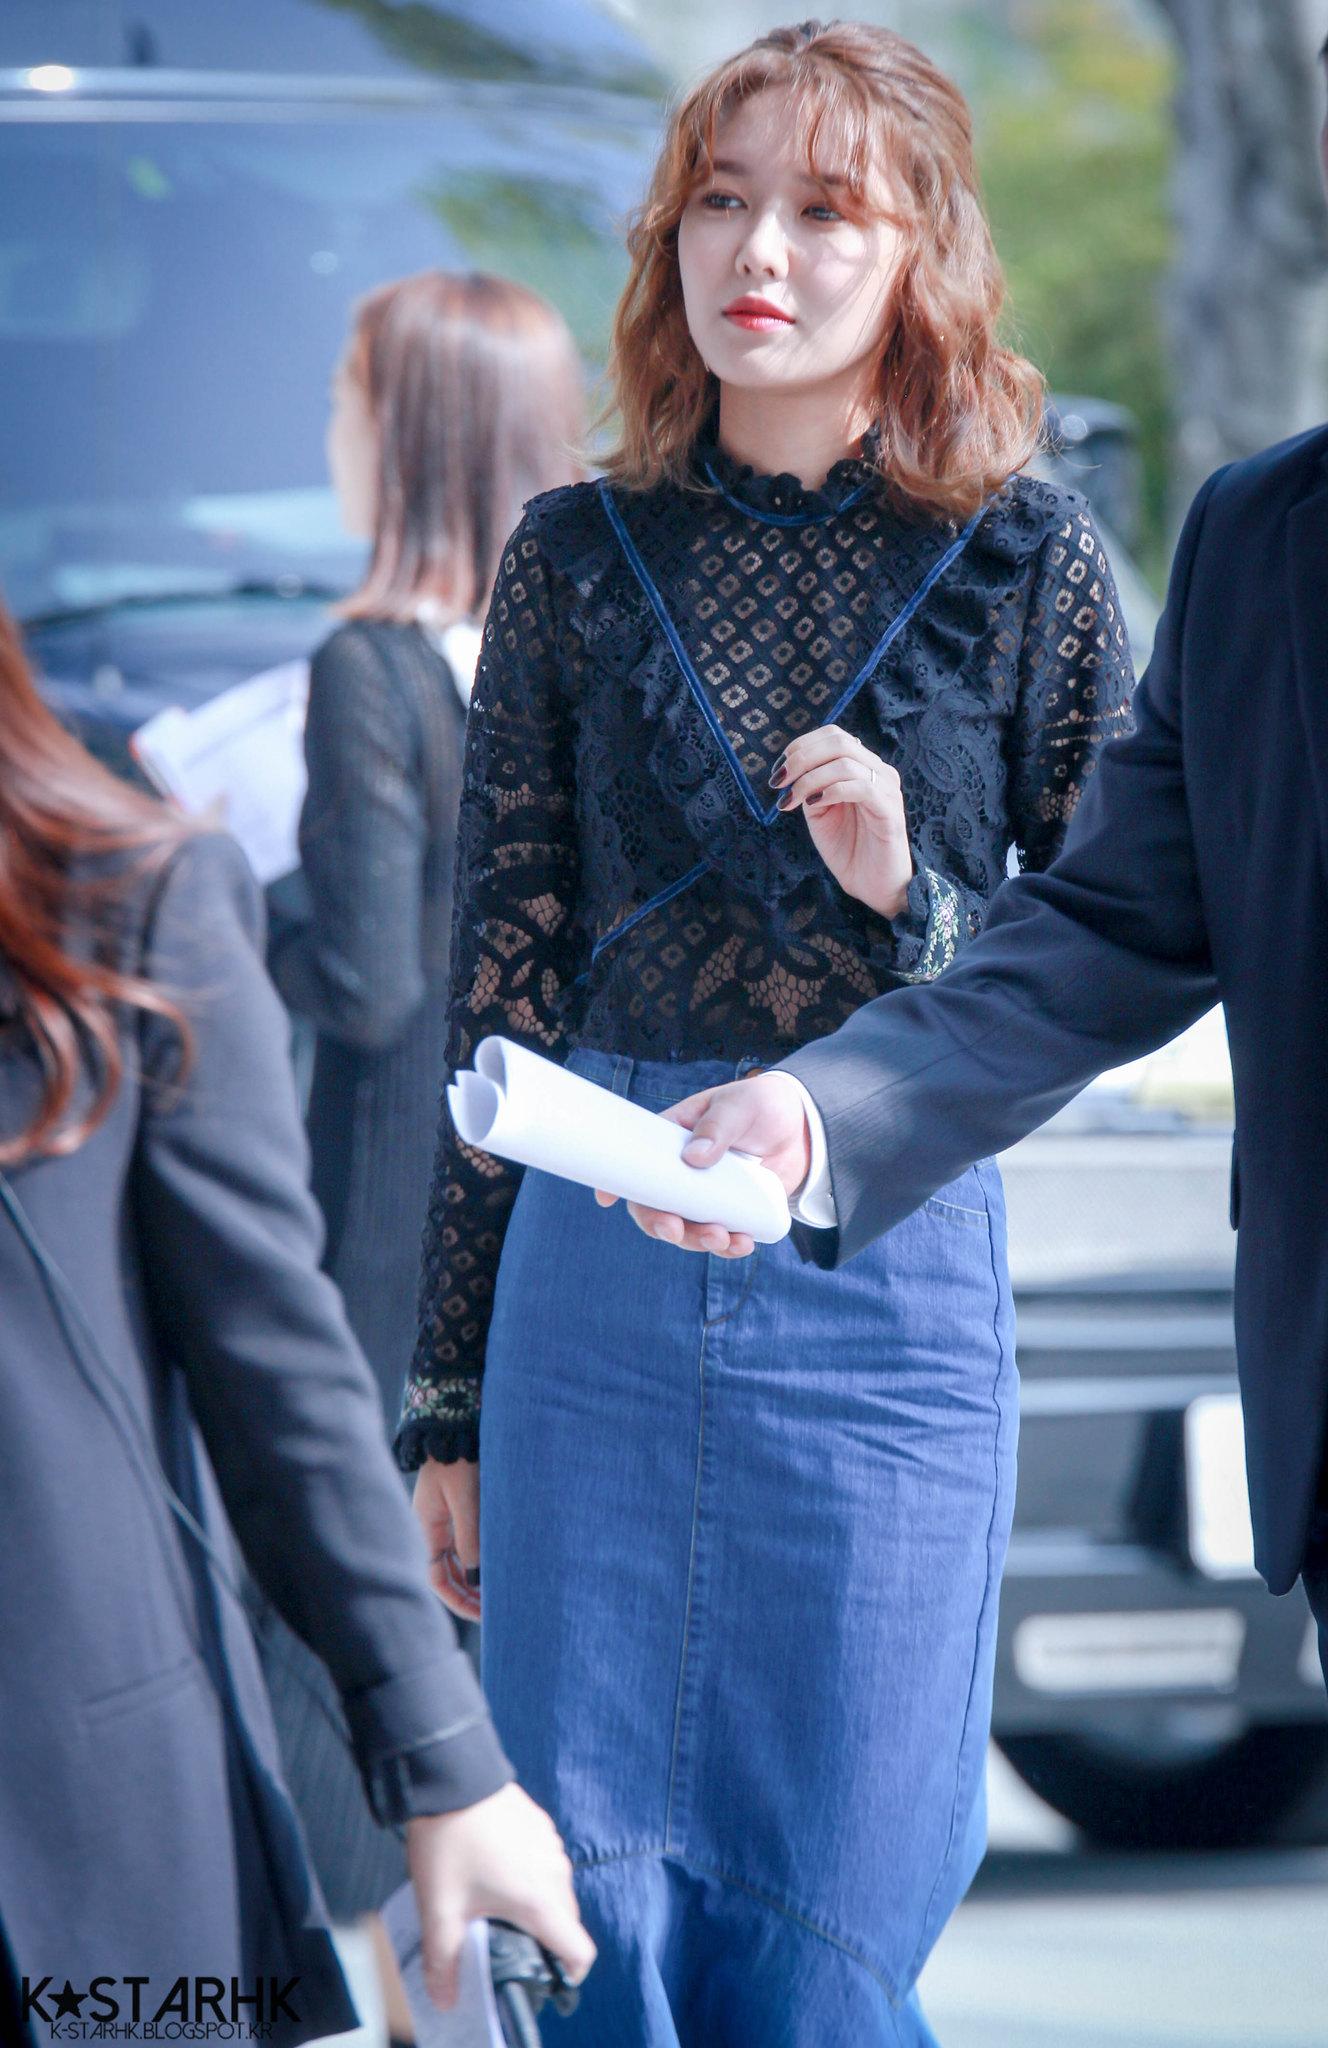 [PIC][19-10-2016]SooYoung tham dự sự kiện ra mắt BST Xuân - Hè của thương hiệu "JAIN SONG" trong khuôn khổ "2017 S/S HERA Seoul Fashion Week" vào hôm nay 35296656380_1f1d406fa7_k